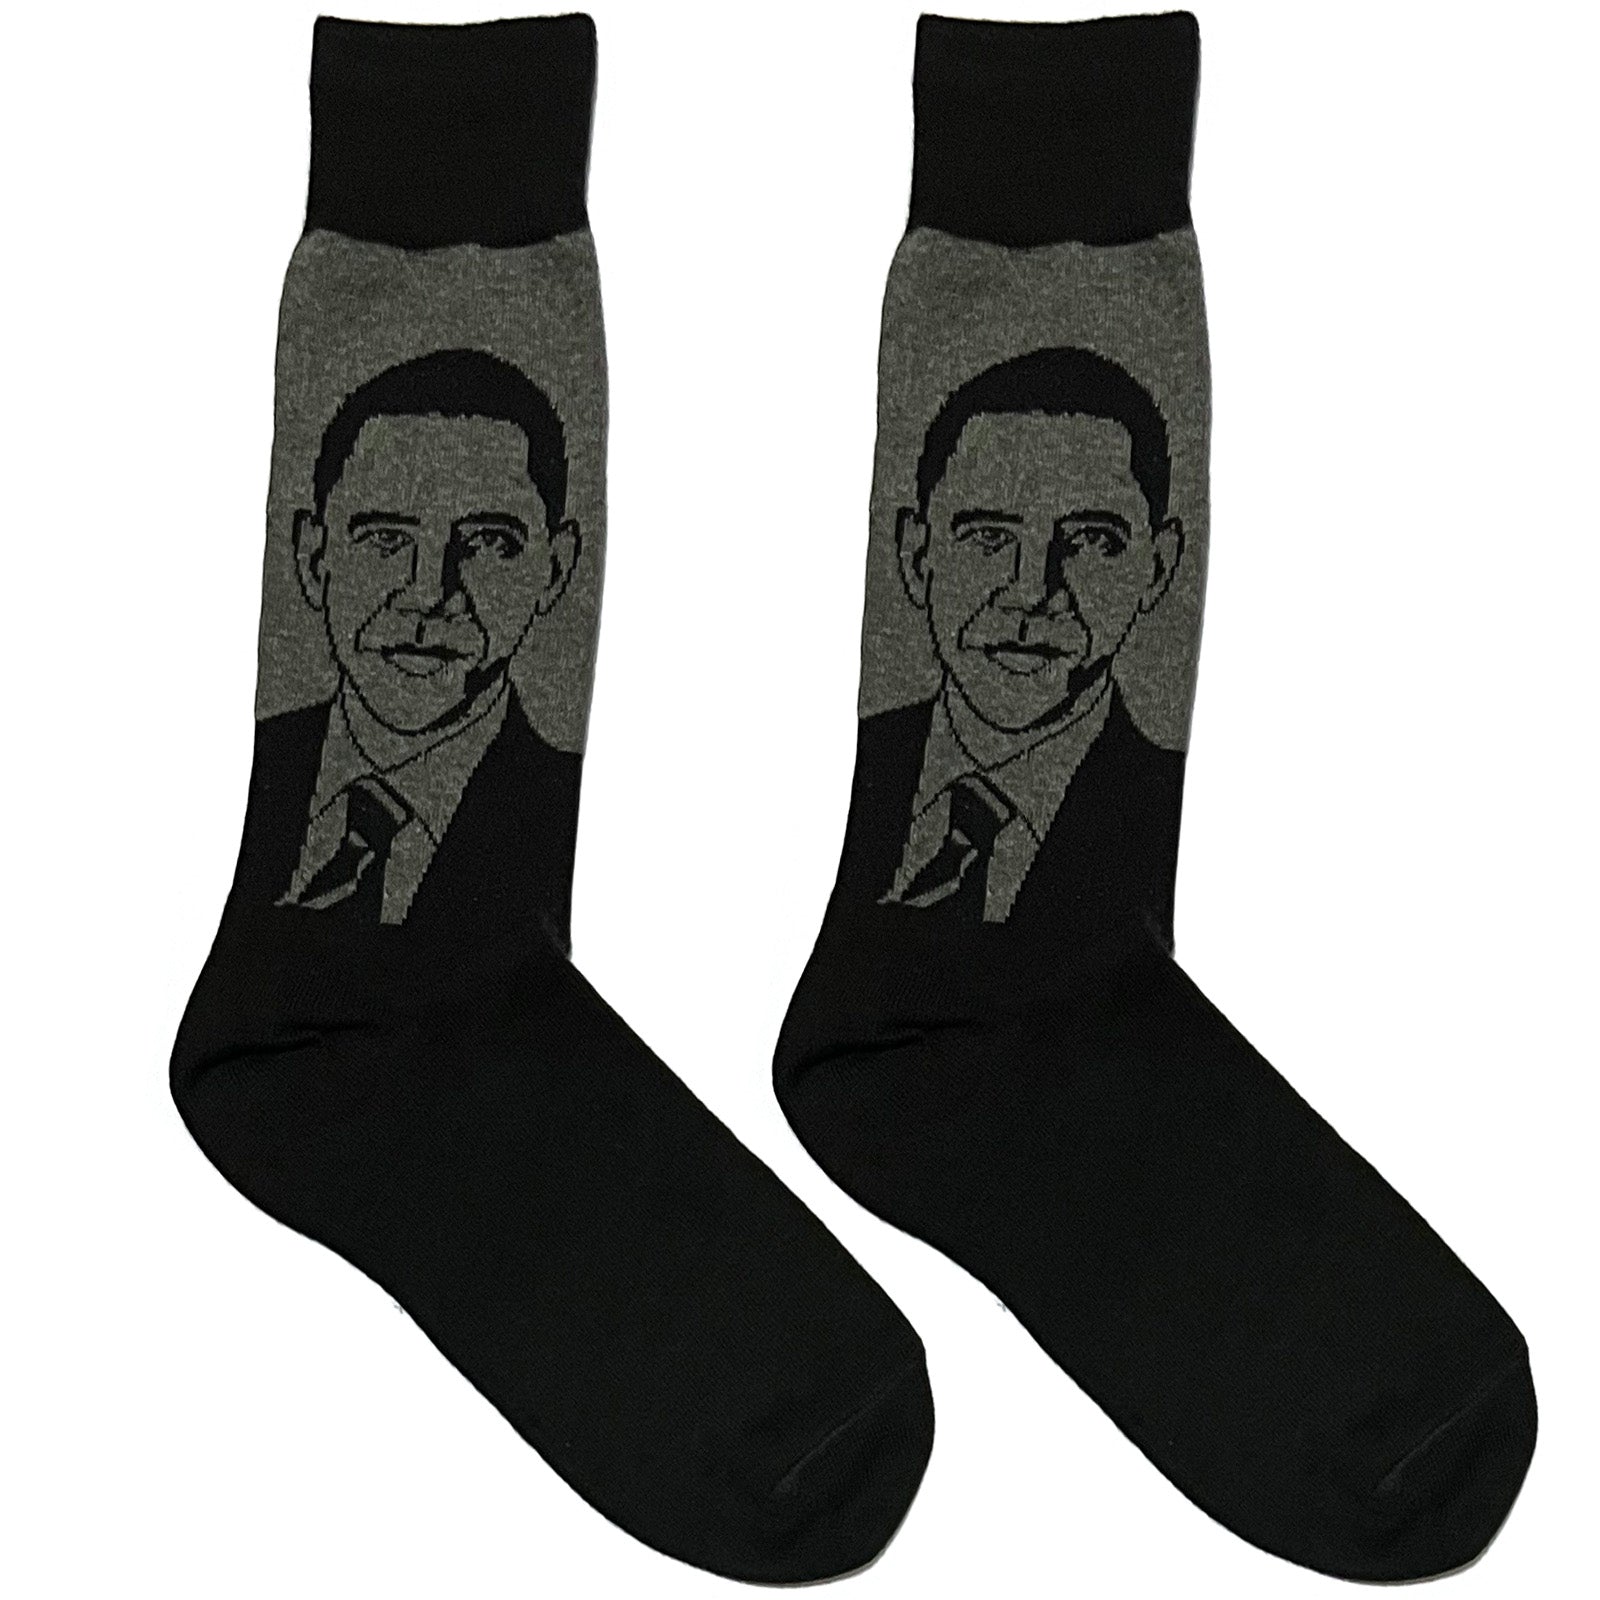 Black Obama Socks